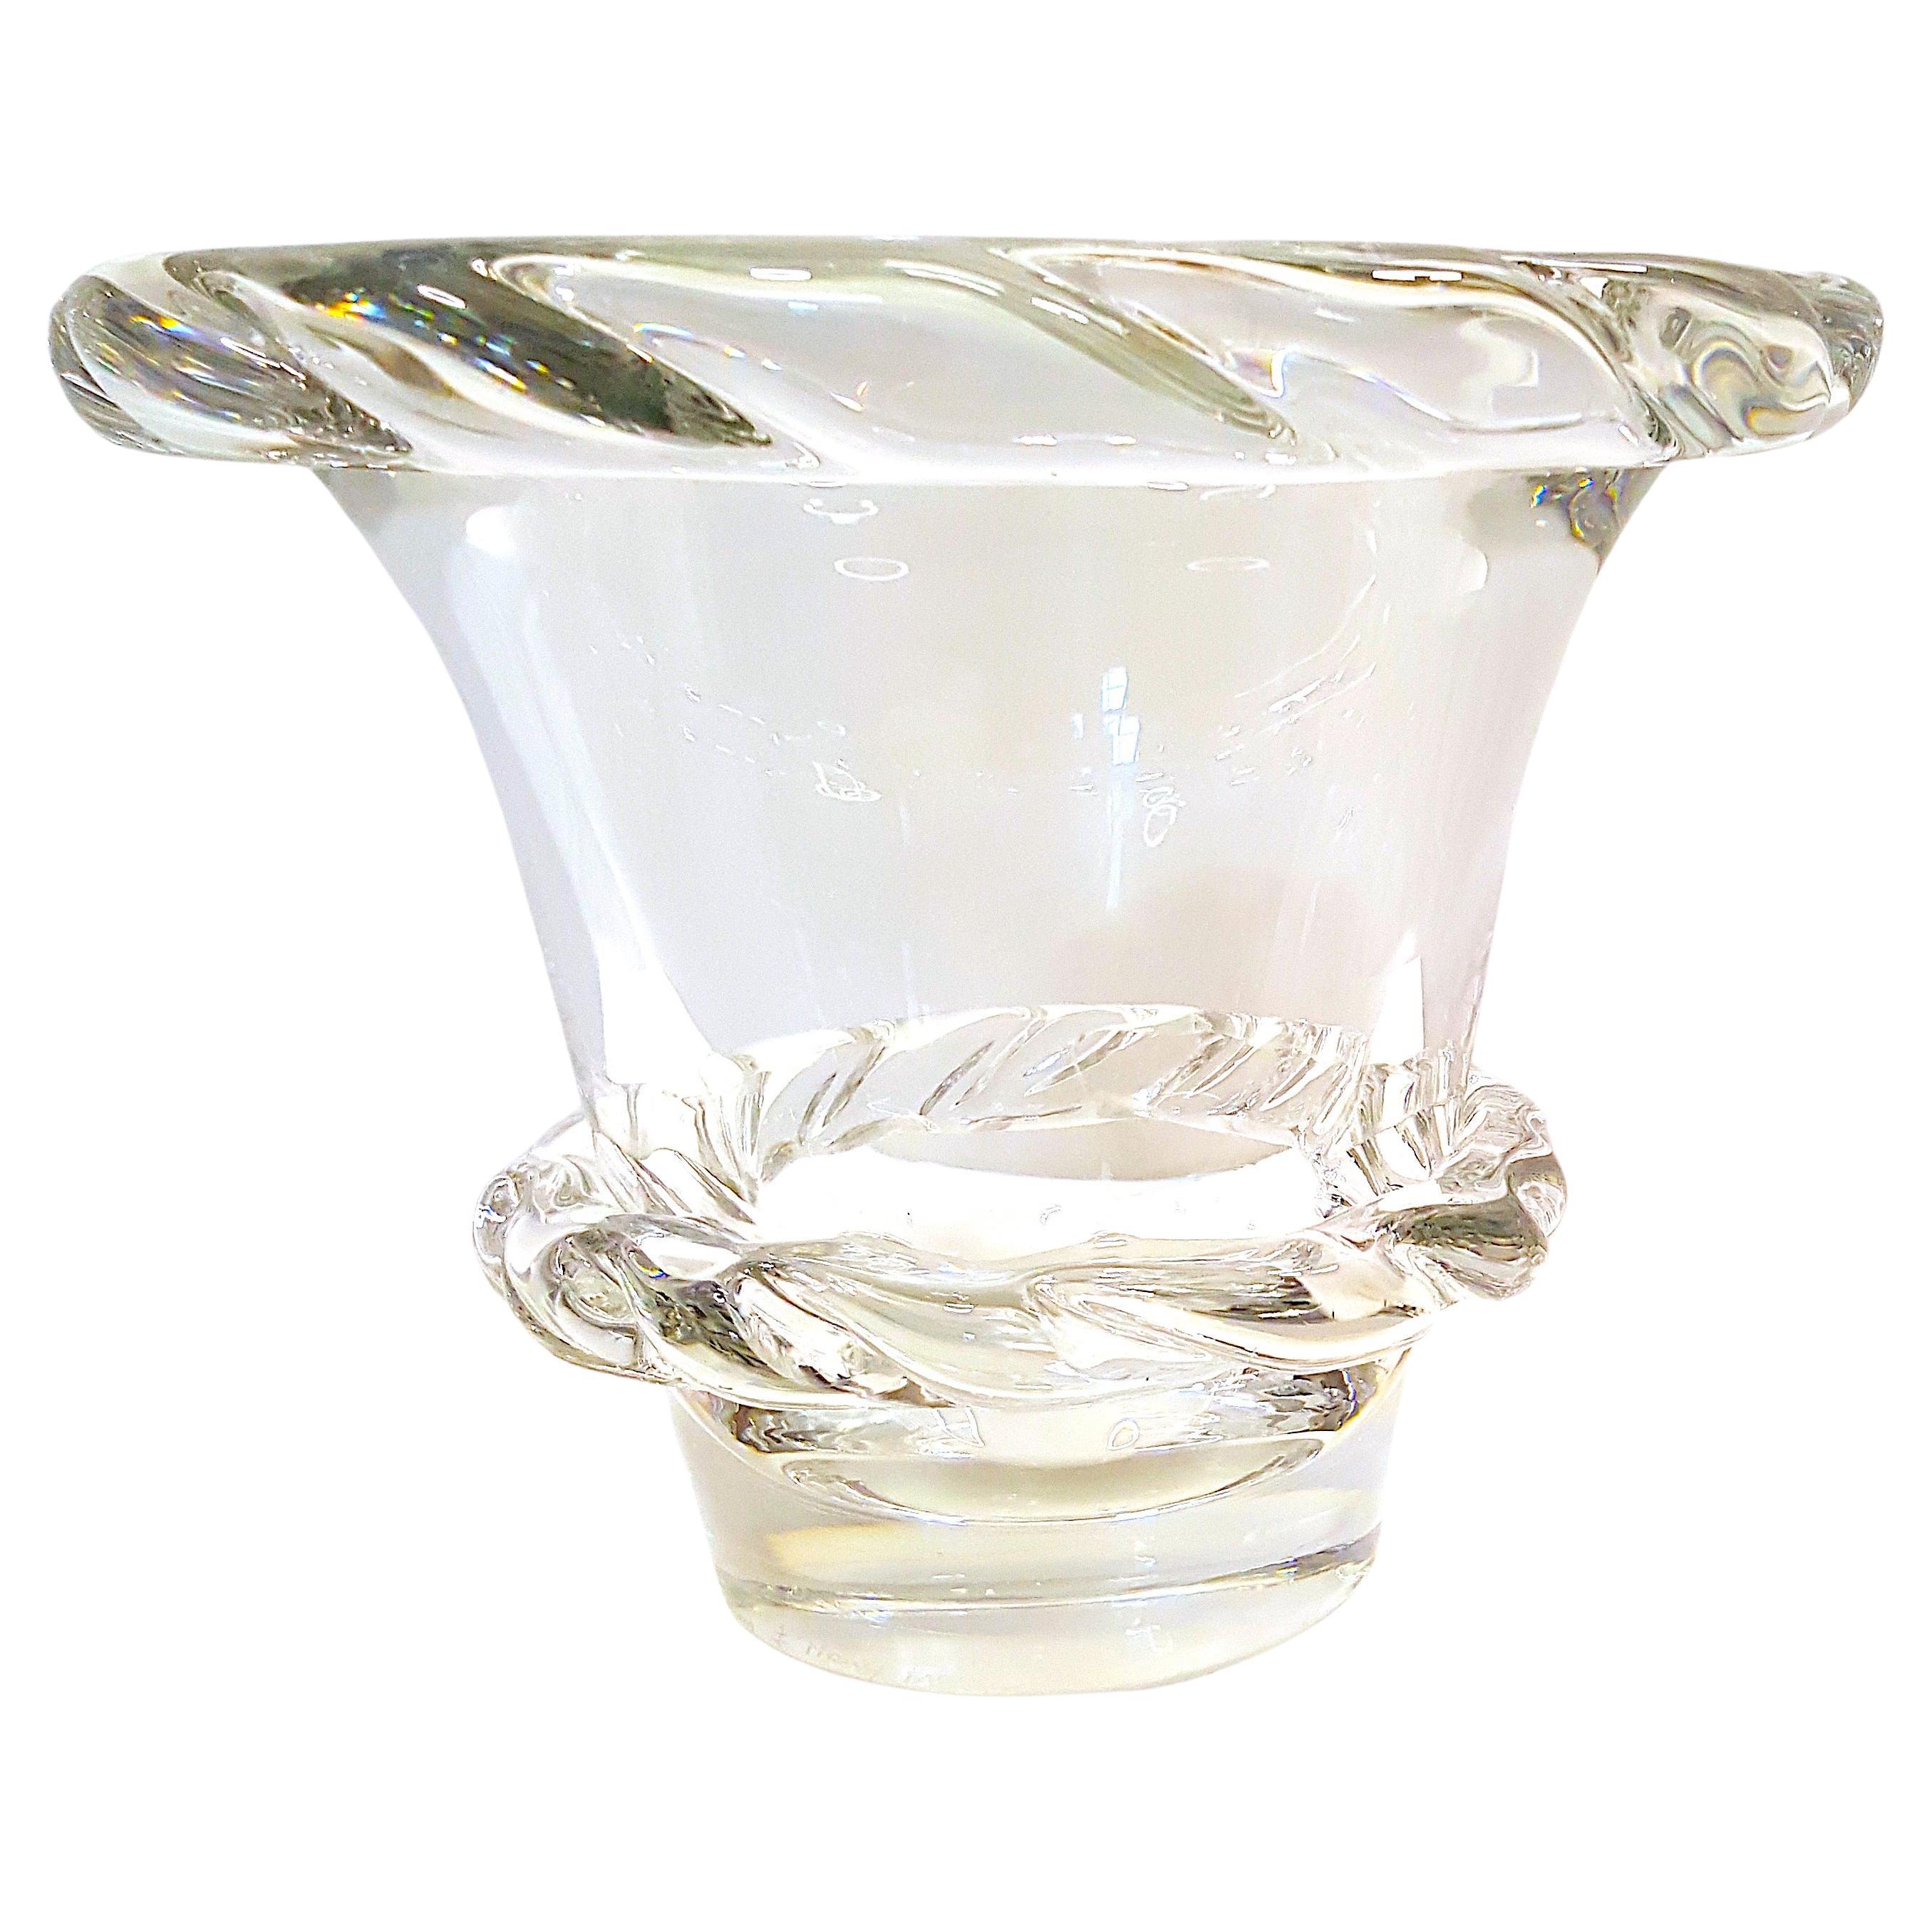 Vase en verre d'art : Daum Nancy France. Comme en témoigne ce vase sculptural en cristal de plomb incolore soufflé et façonné à chaud, les plus belles œuvres artistiques irréprochables de l'histoire du verrier français présentaient des applications